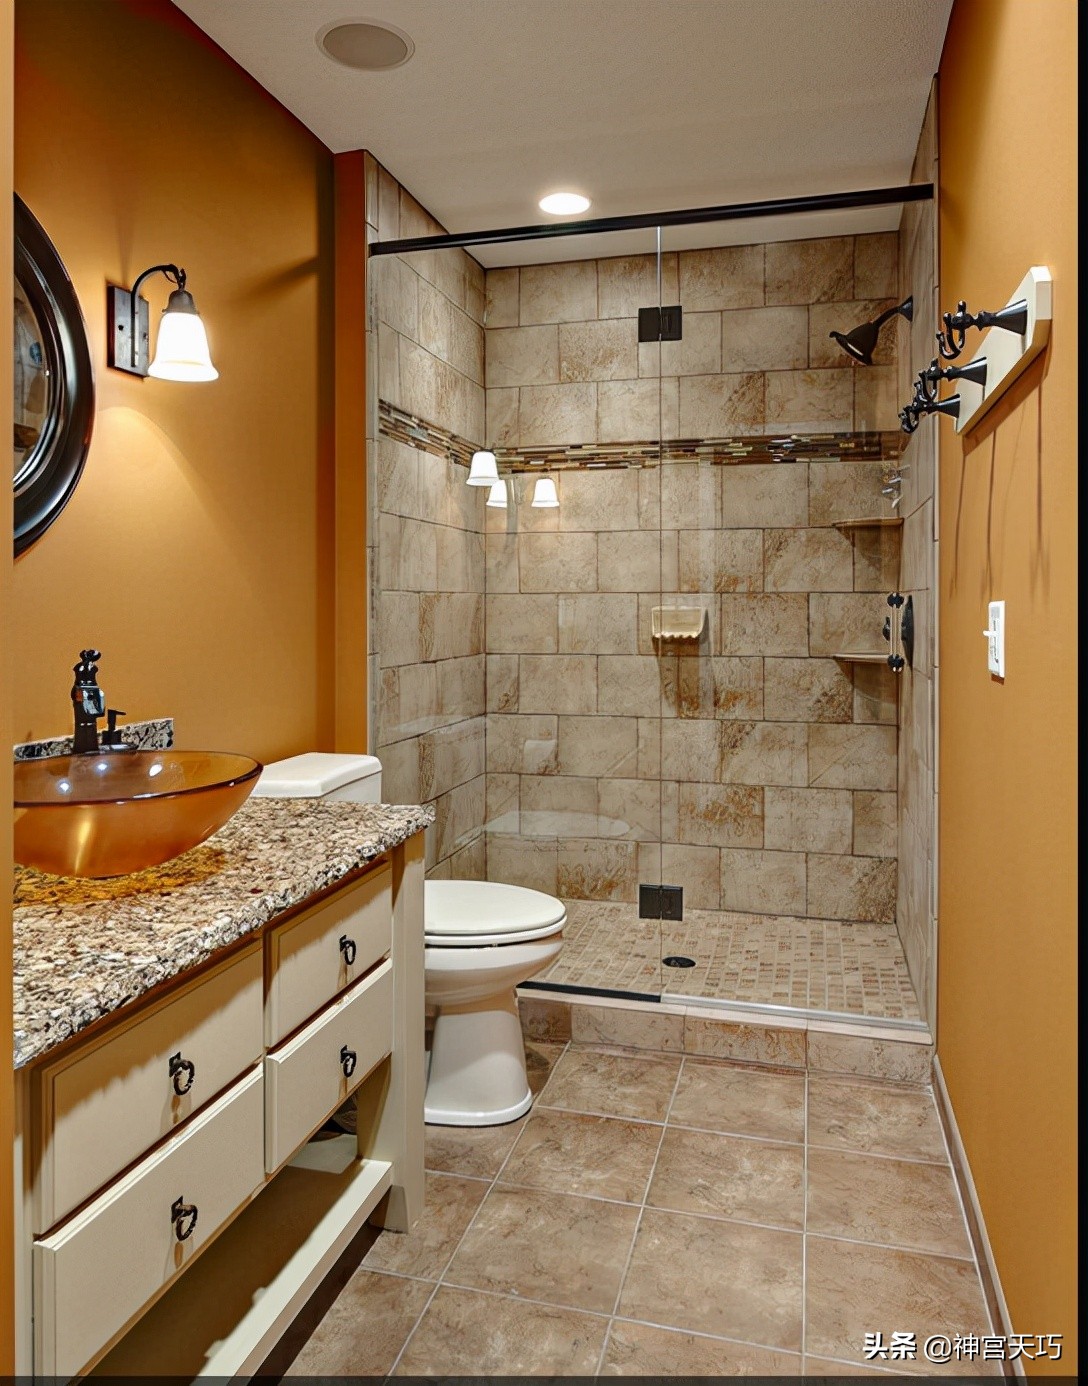 卫生间翻新改造不拆瓷砖是否可行？卫生间地面能直接贴新瓷砖吗